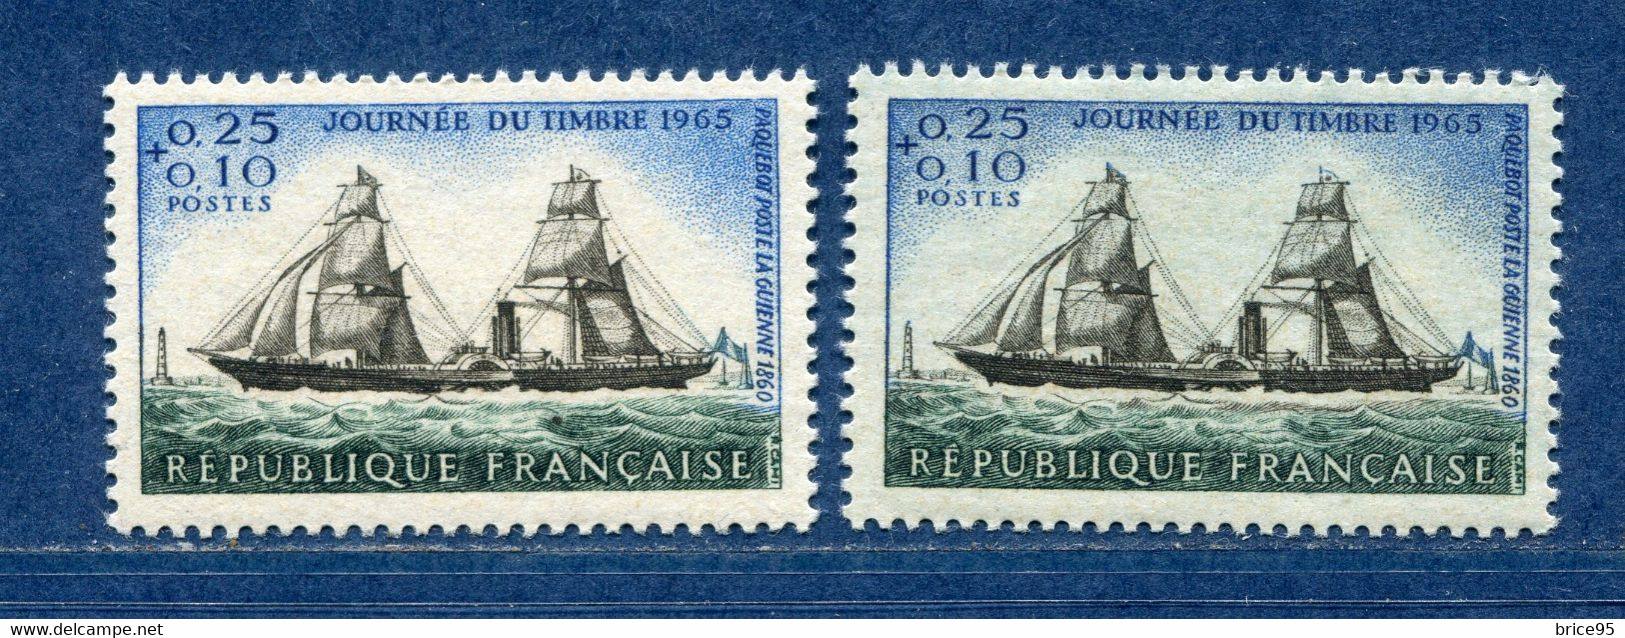 ⭐ France - Variété - YT N° 1546 - Couleurs - Pétouilles - Neuf Sans Charnière - 1965 ⭐ - Nuevos